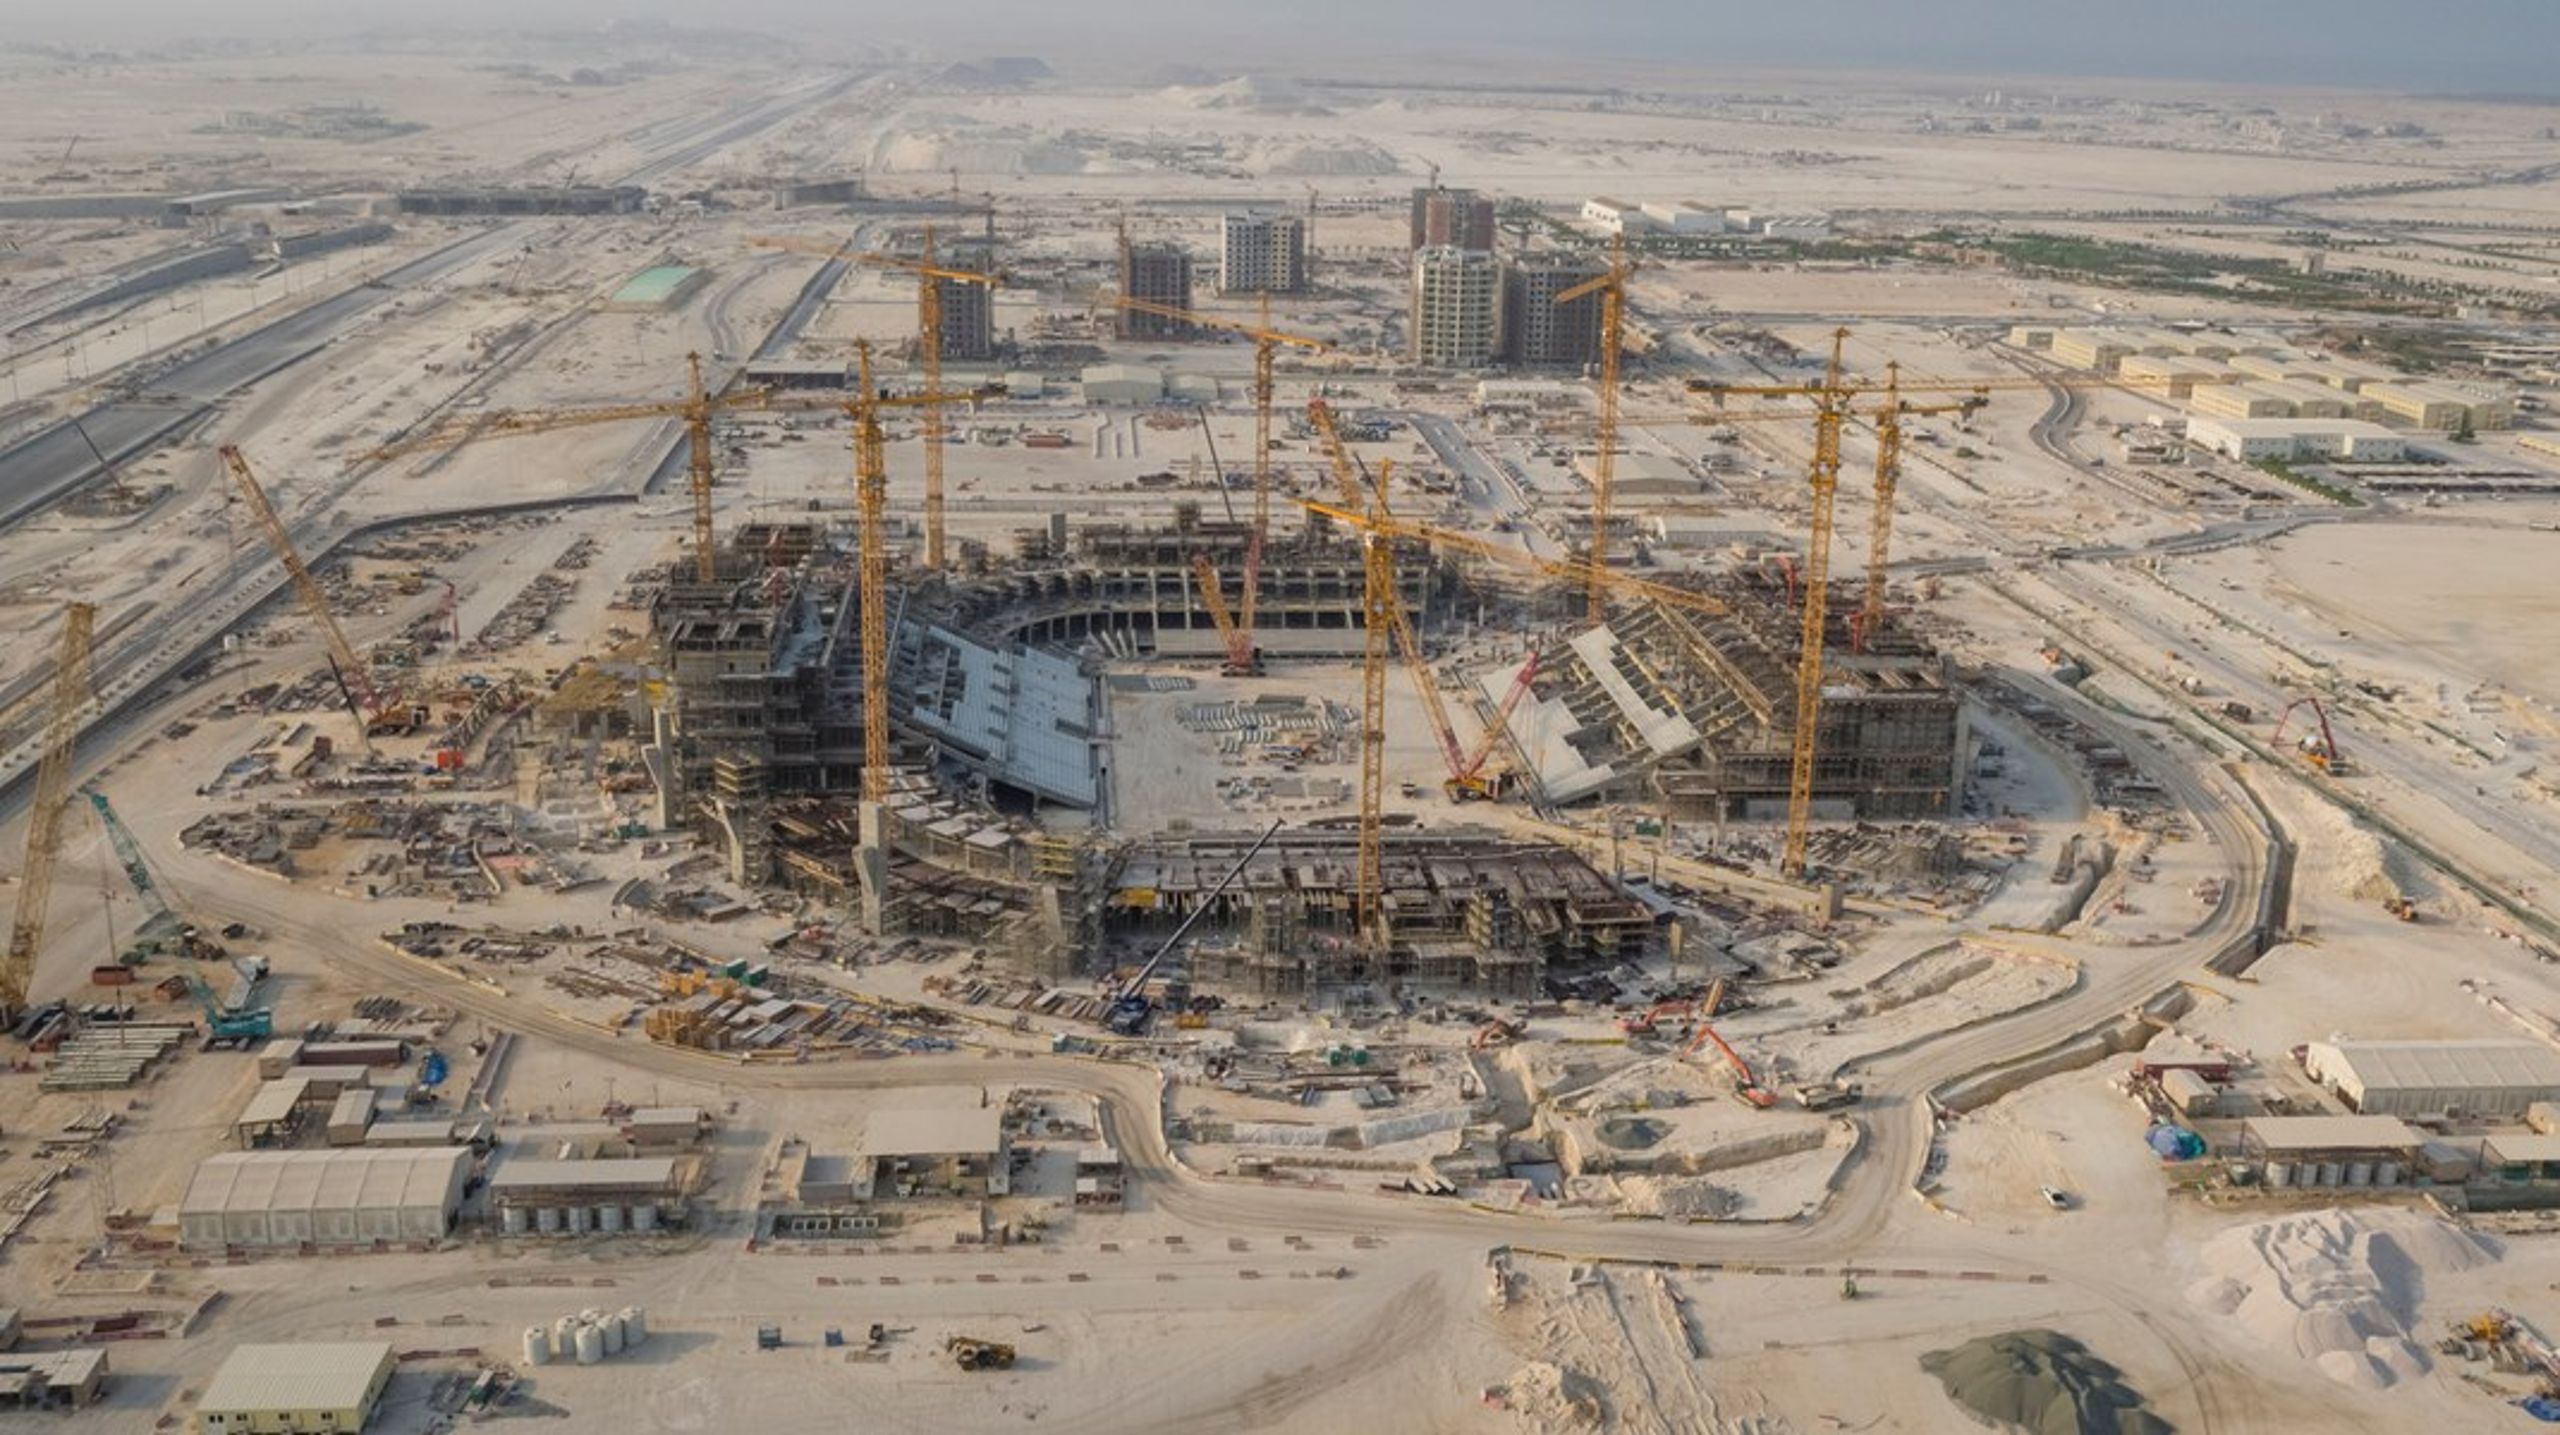 Qatar er værter for VM 2022 trods mangel på&nbsp;stadion-infrastruktur, som derfor nu bliver&nbsp;opført&nbsp;af migrantarbejder, der lever under dybt&nbsp;kritisable&nbsp;forhold. Det skal vi forhindre i fremtiden, skriver DIF's formand.